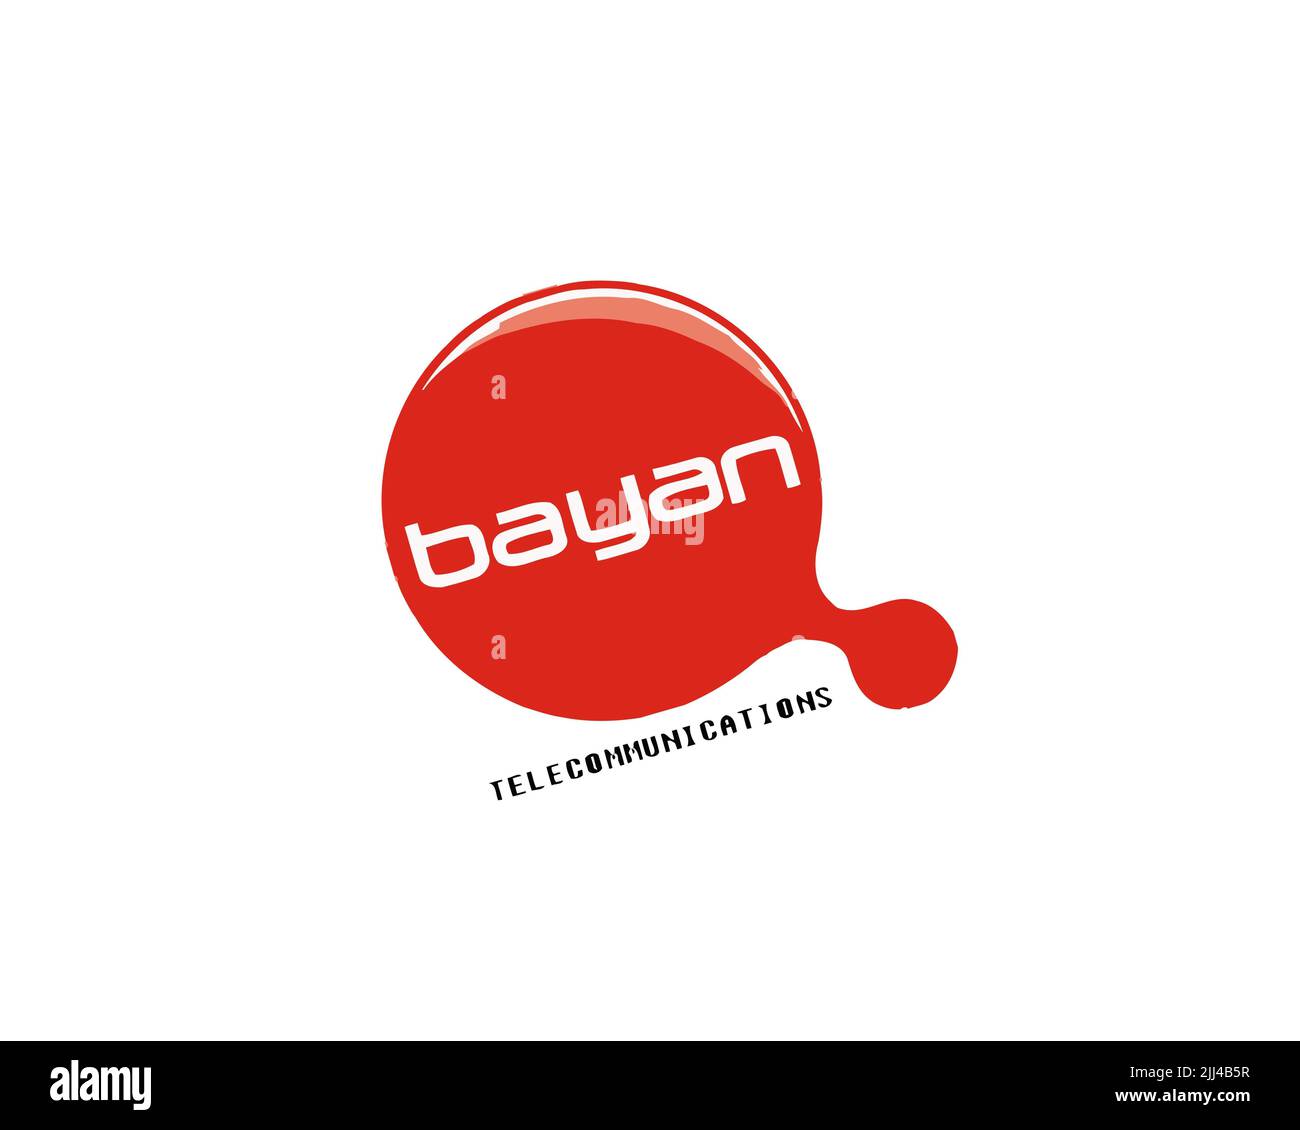 Bayan Telecommunications, gedrehtes Logo, weißer Hintergrund Stockfoto